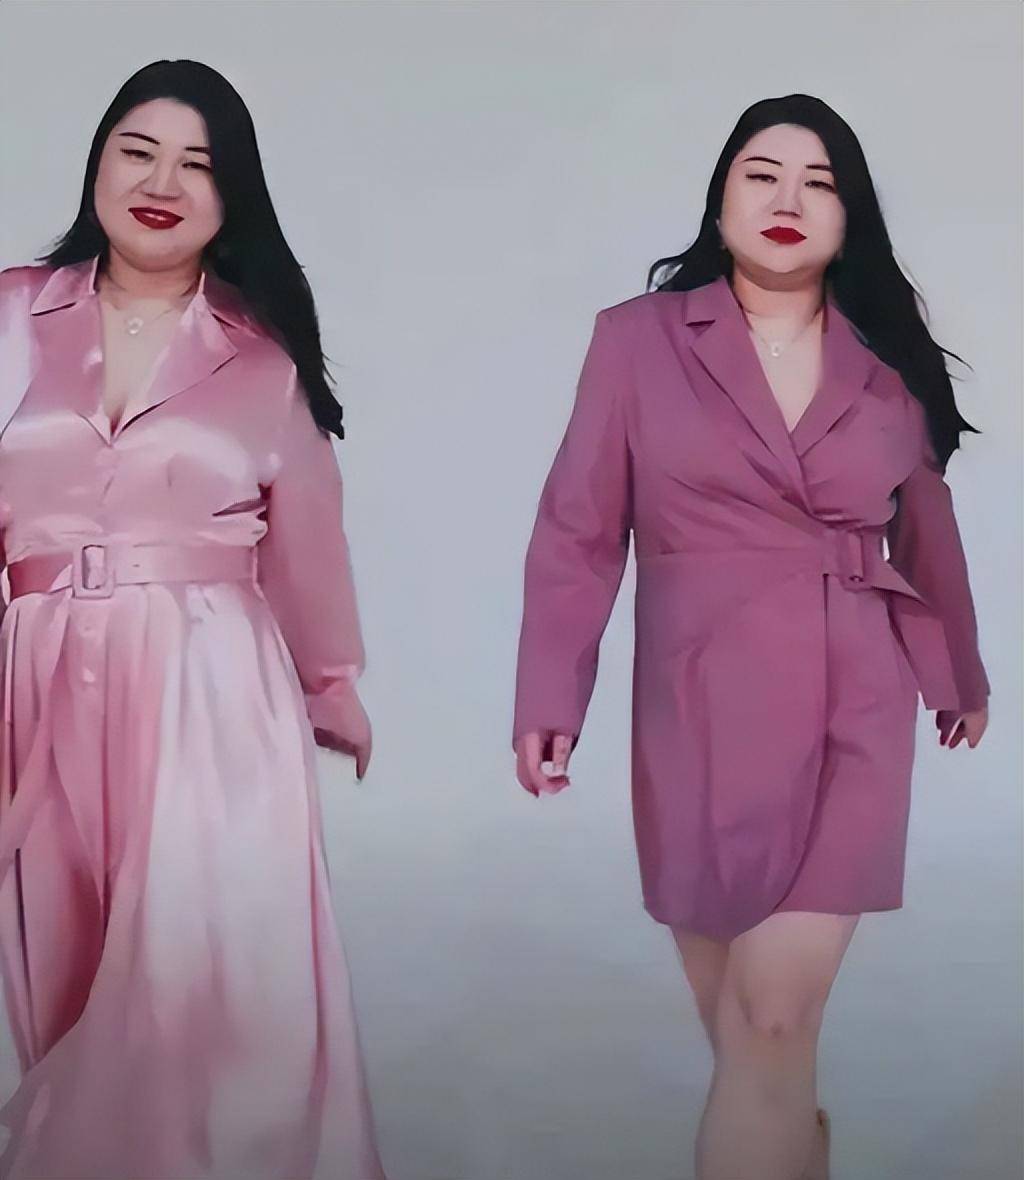 女装店用大肚腩模特展示衣服,网友:这不就是我本人吗!